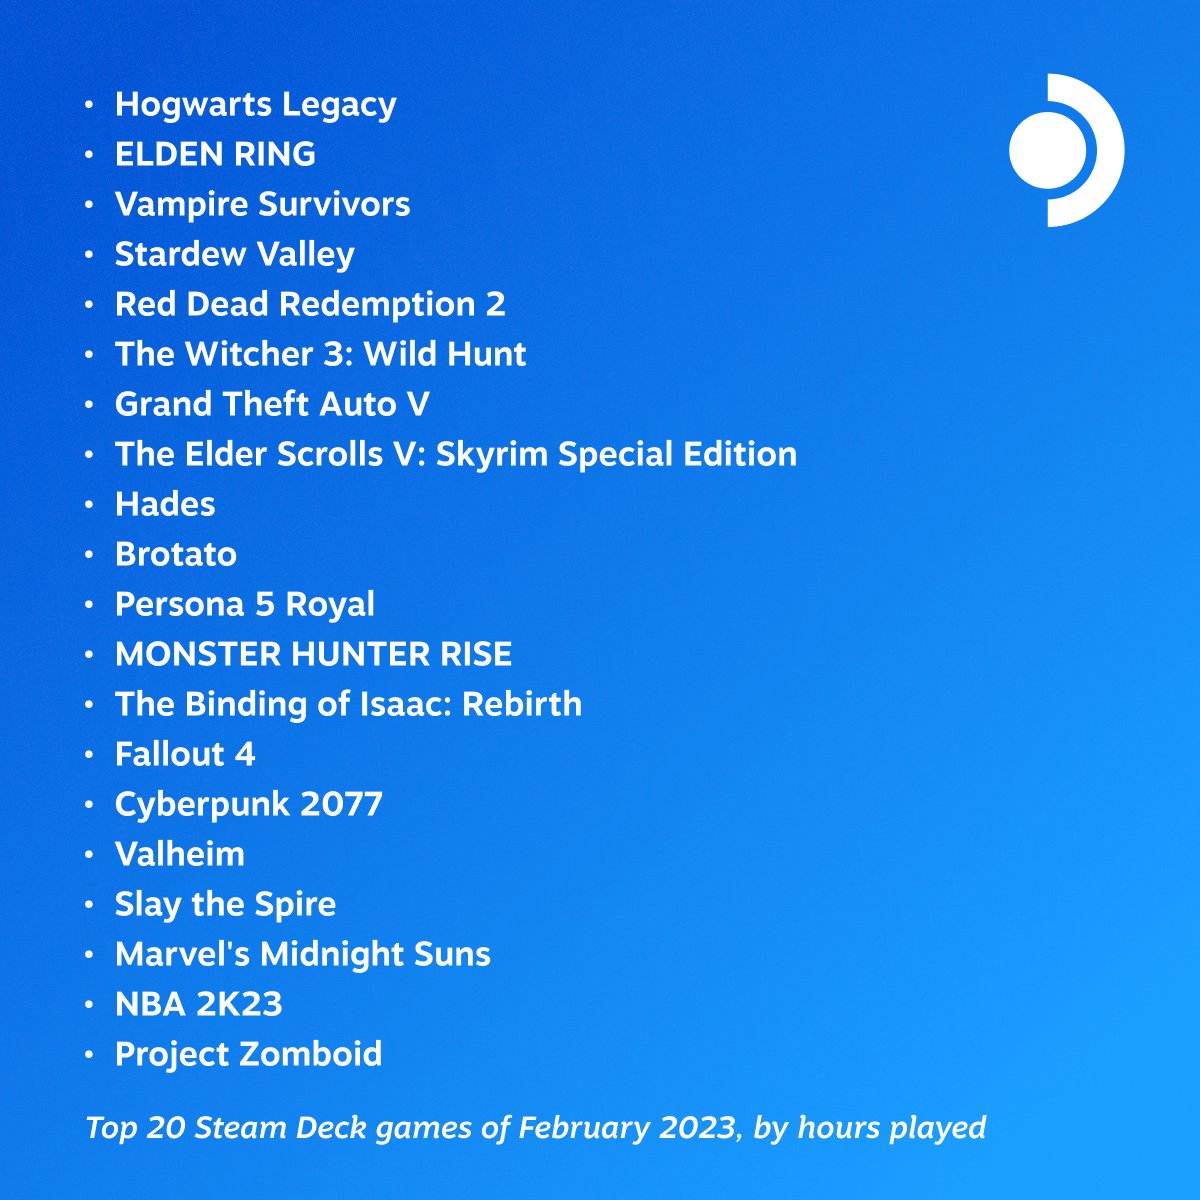 Названы 20 самых популярных игр на Steam Deck в феврале 2023 года - фото 1